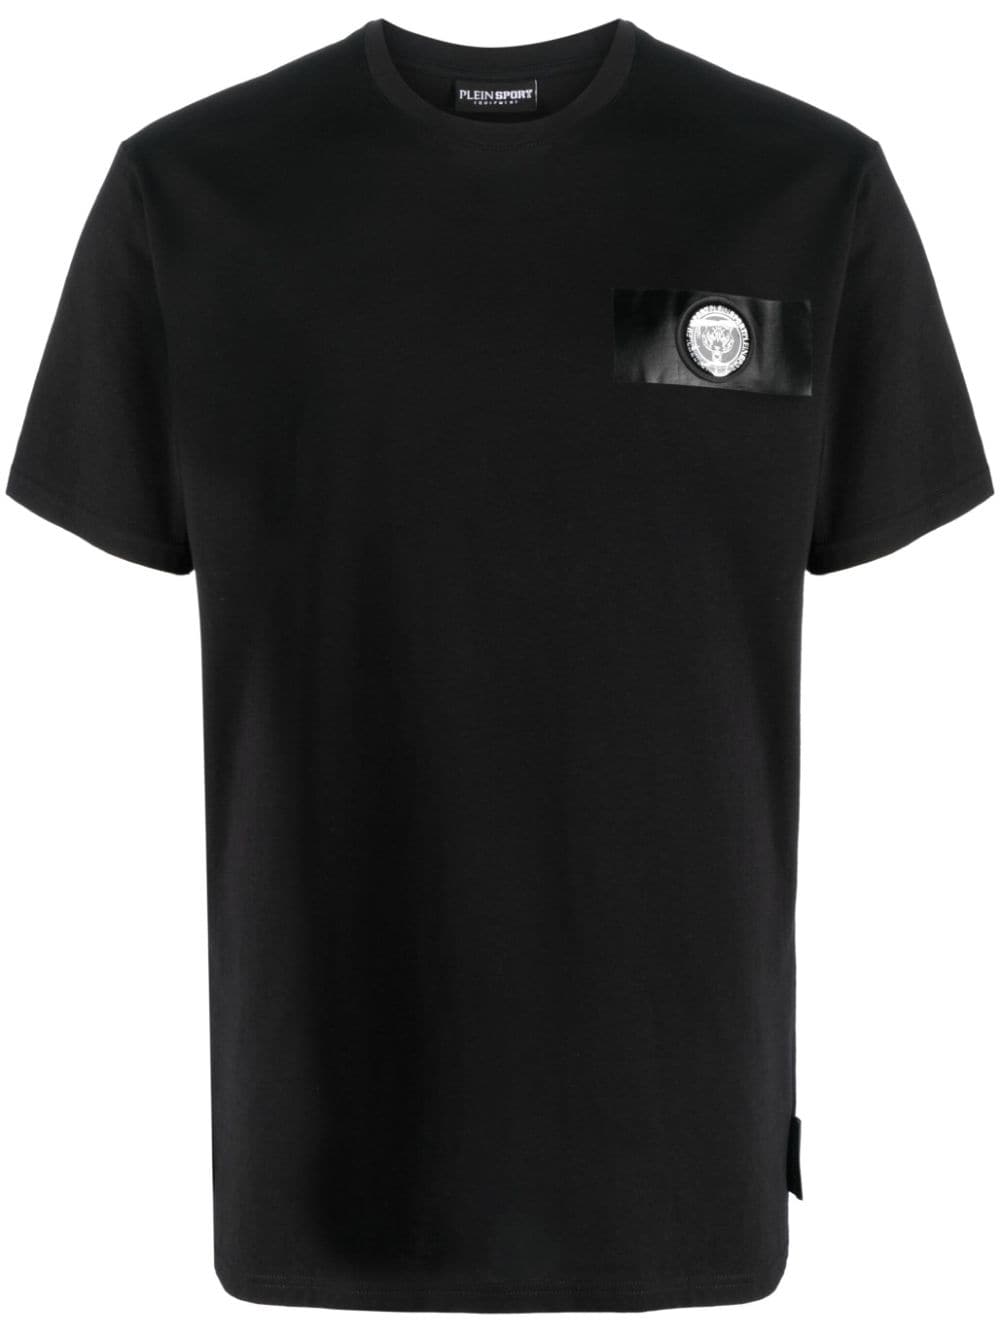 Plein Sport Tiger Crest Edition T-shirt - Black von Plein Sport